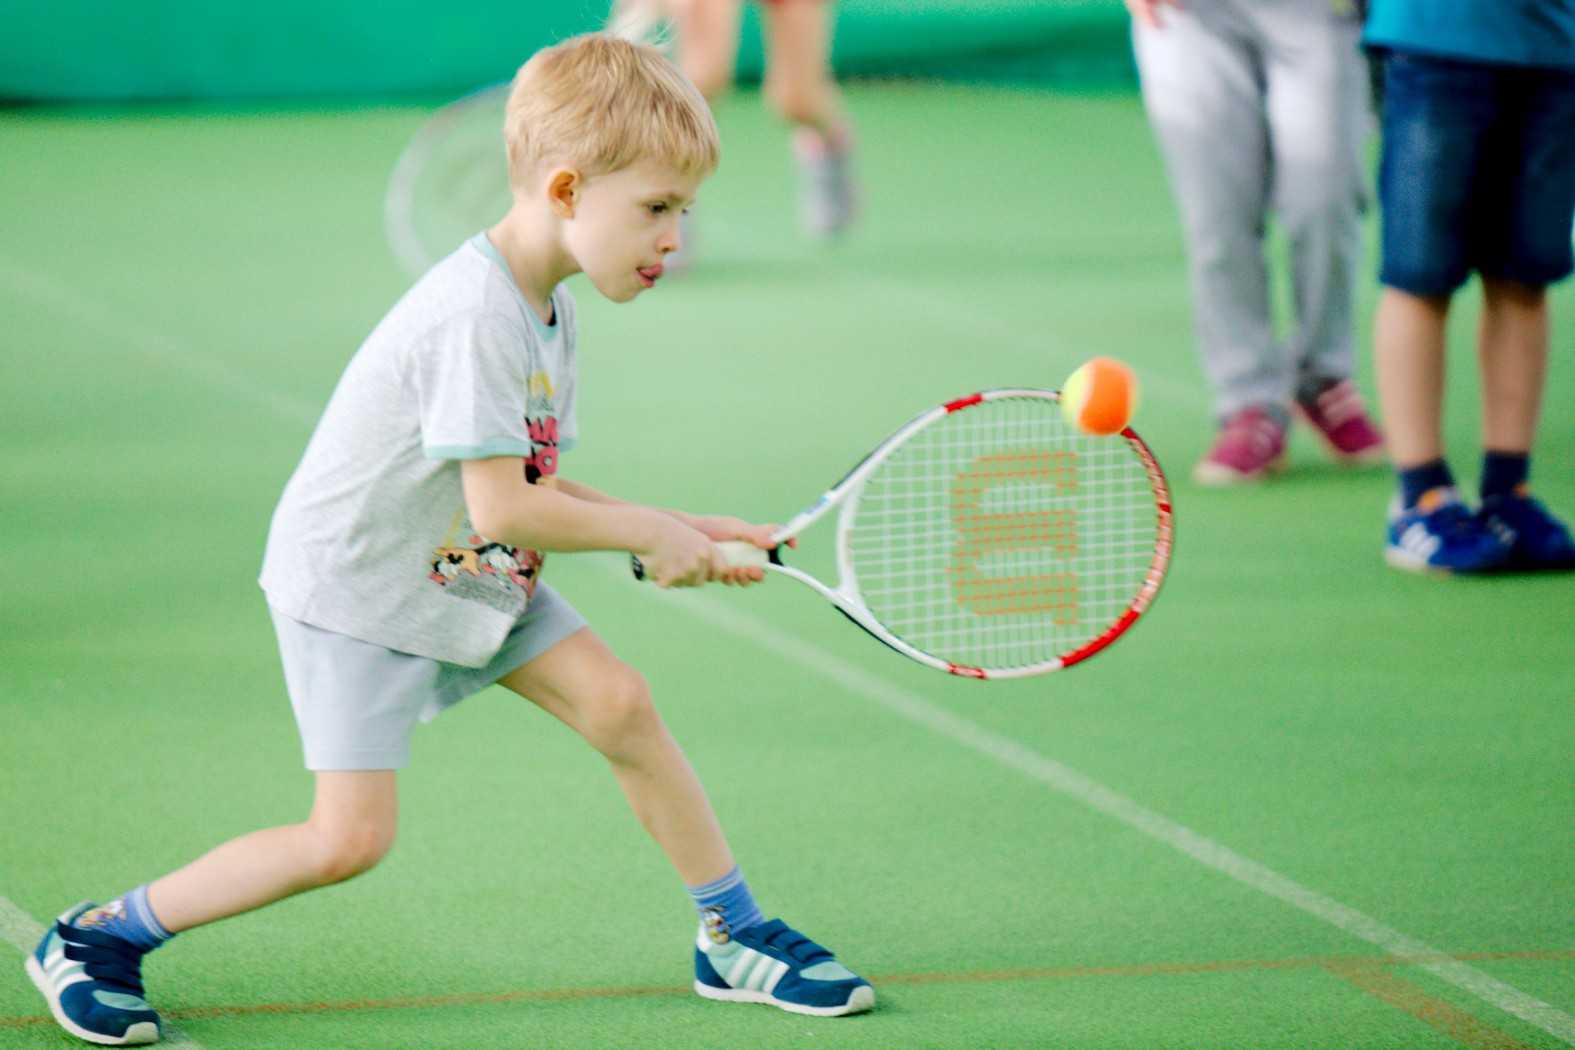 Теннис для детей: преимущества, выбор секции, одежды и обуви